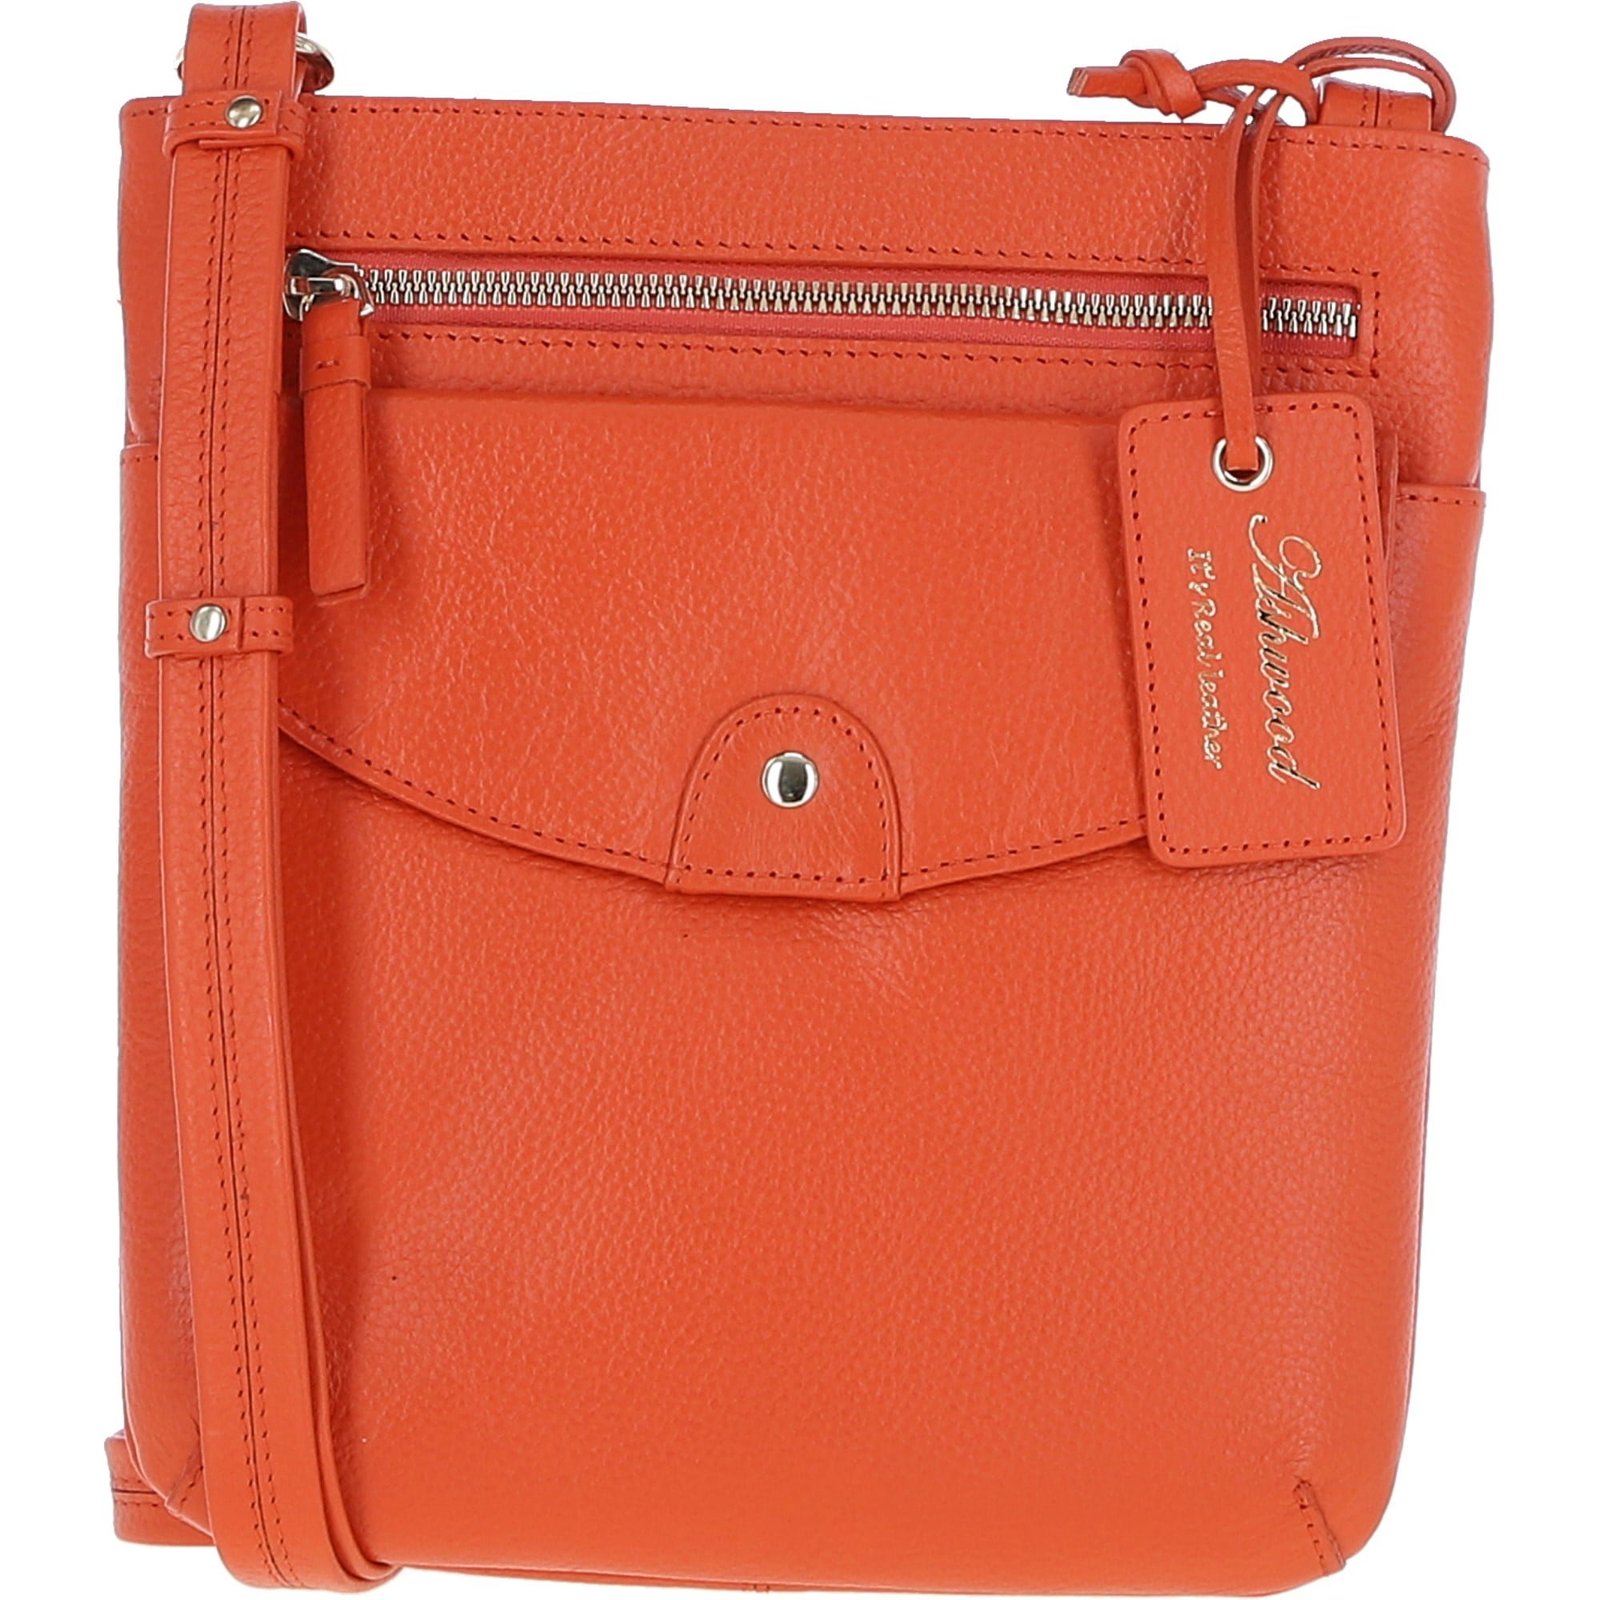 Ashwood, Bags, Ashwood Leather Handbags Uk Brown Leather Crossbody Bag  Foldover Top